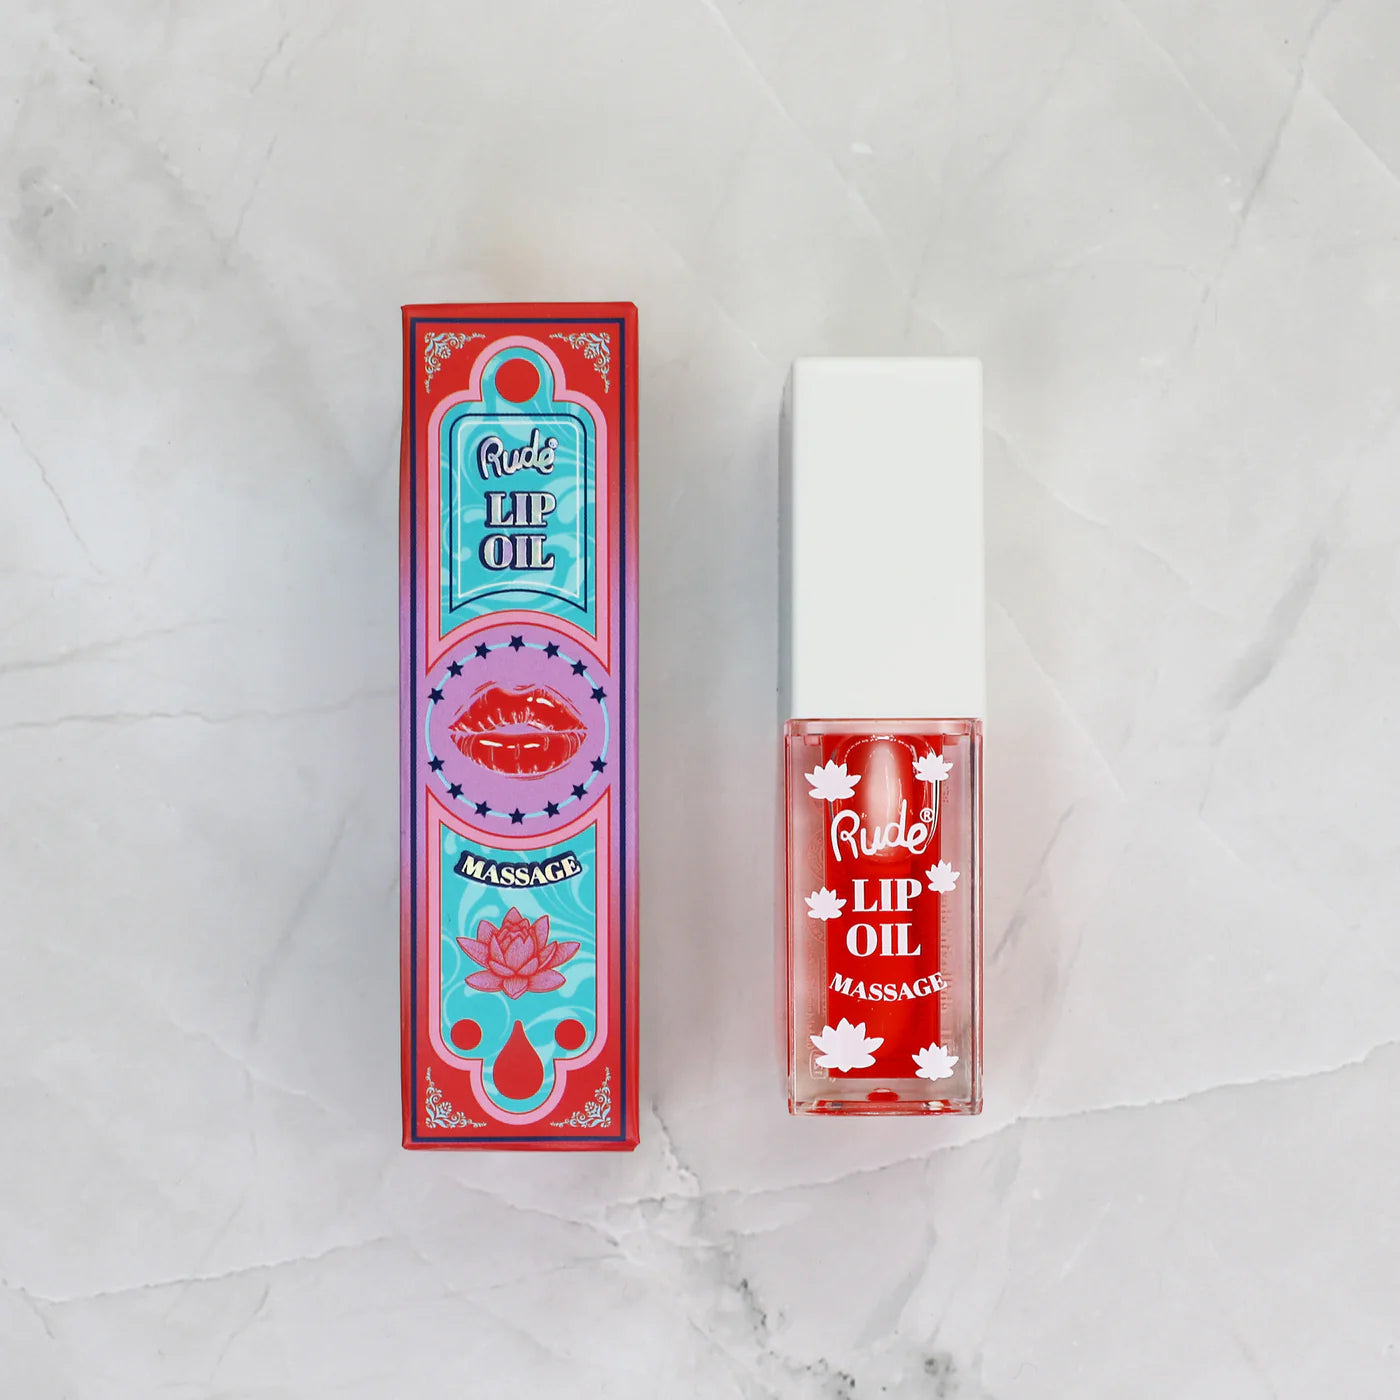 Rude Cosmetics - Lip Oil Massage Chillaxin' Cherry